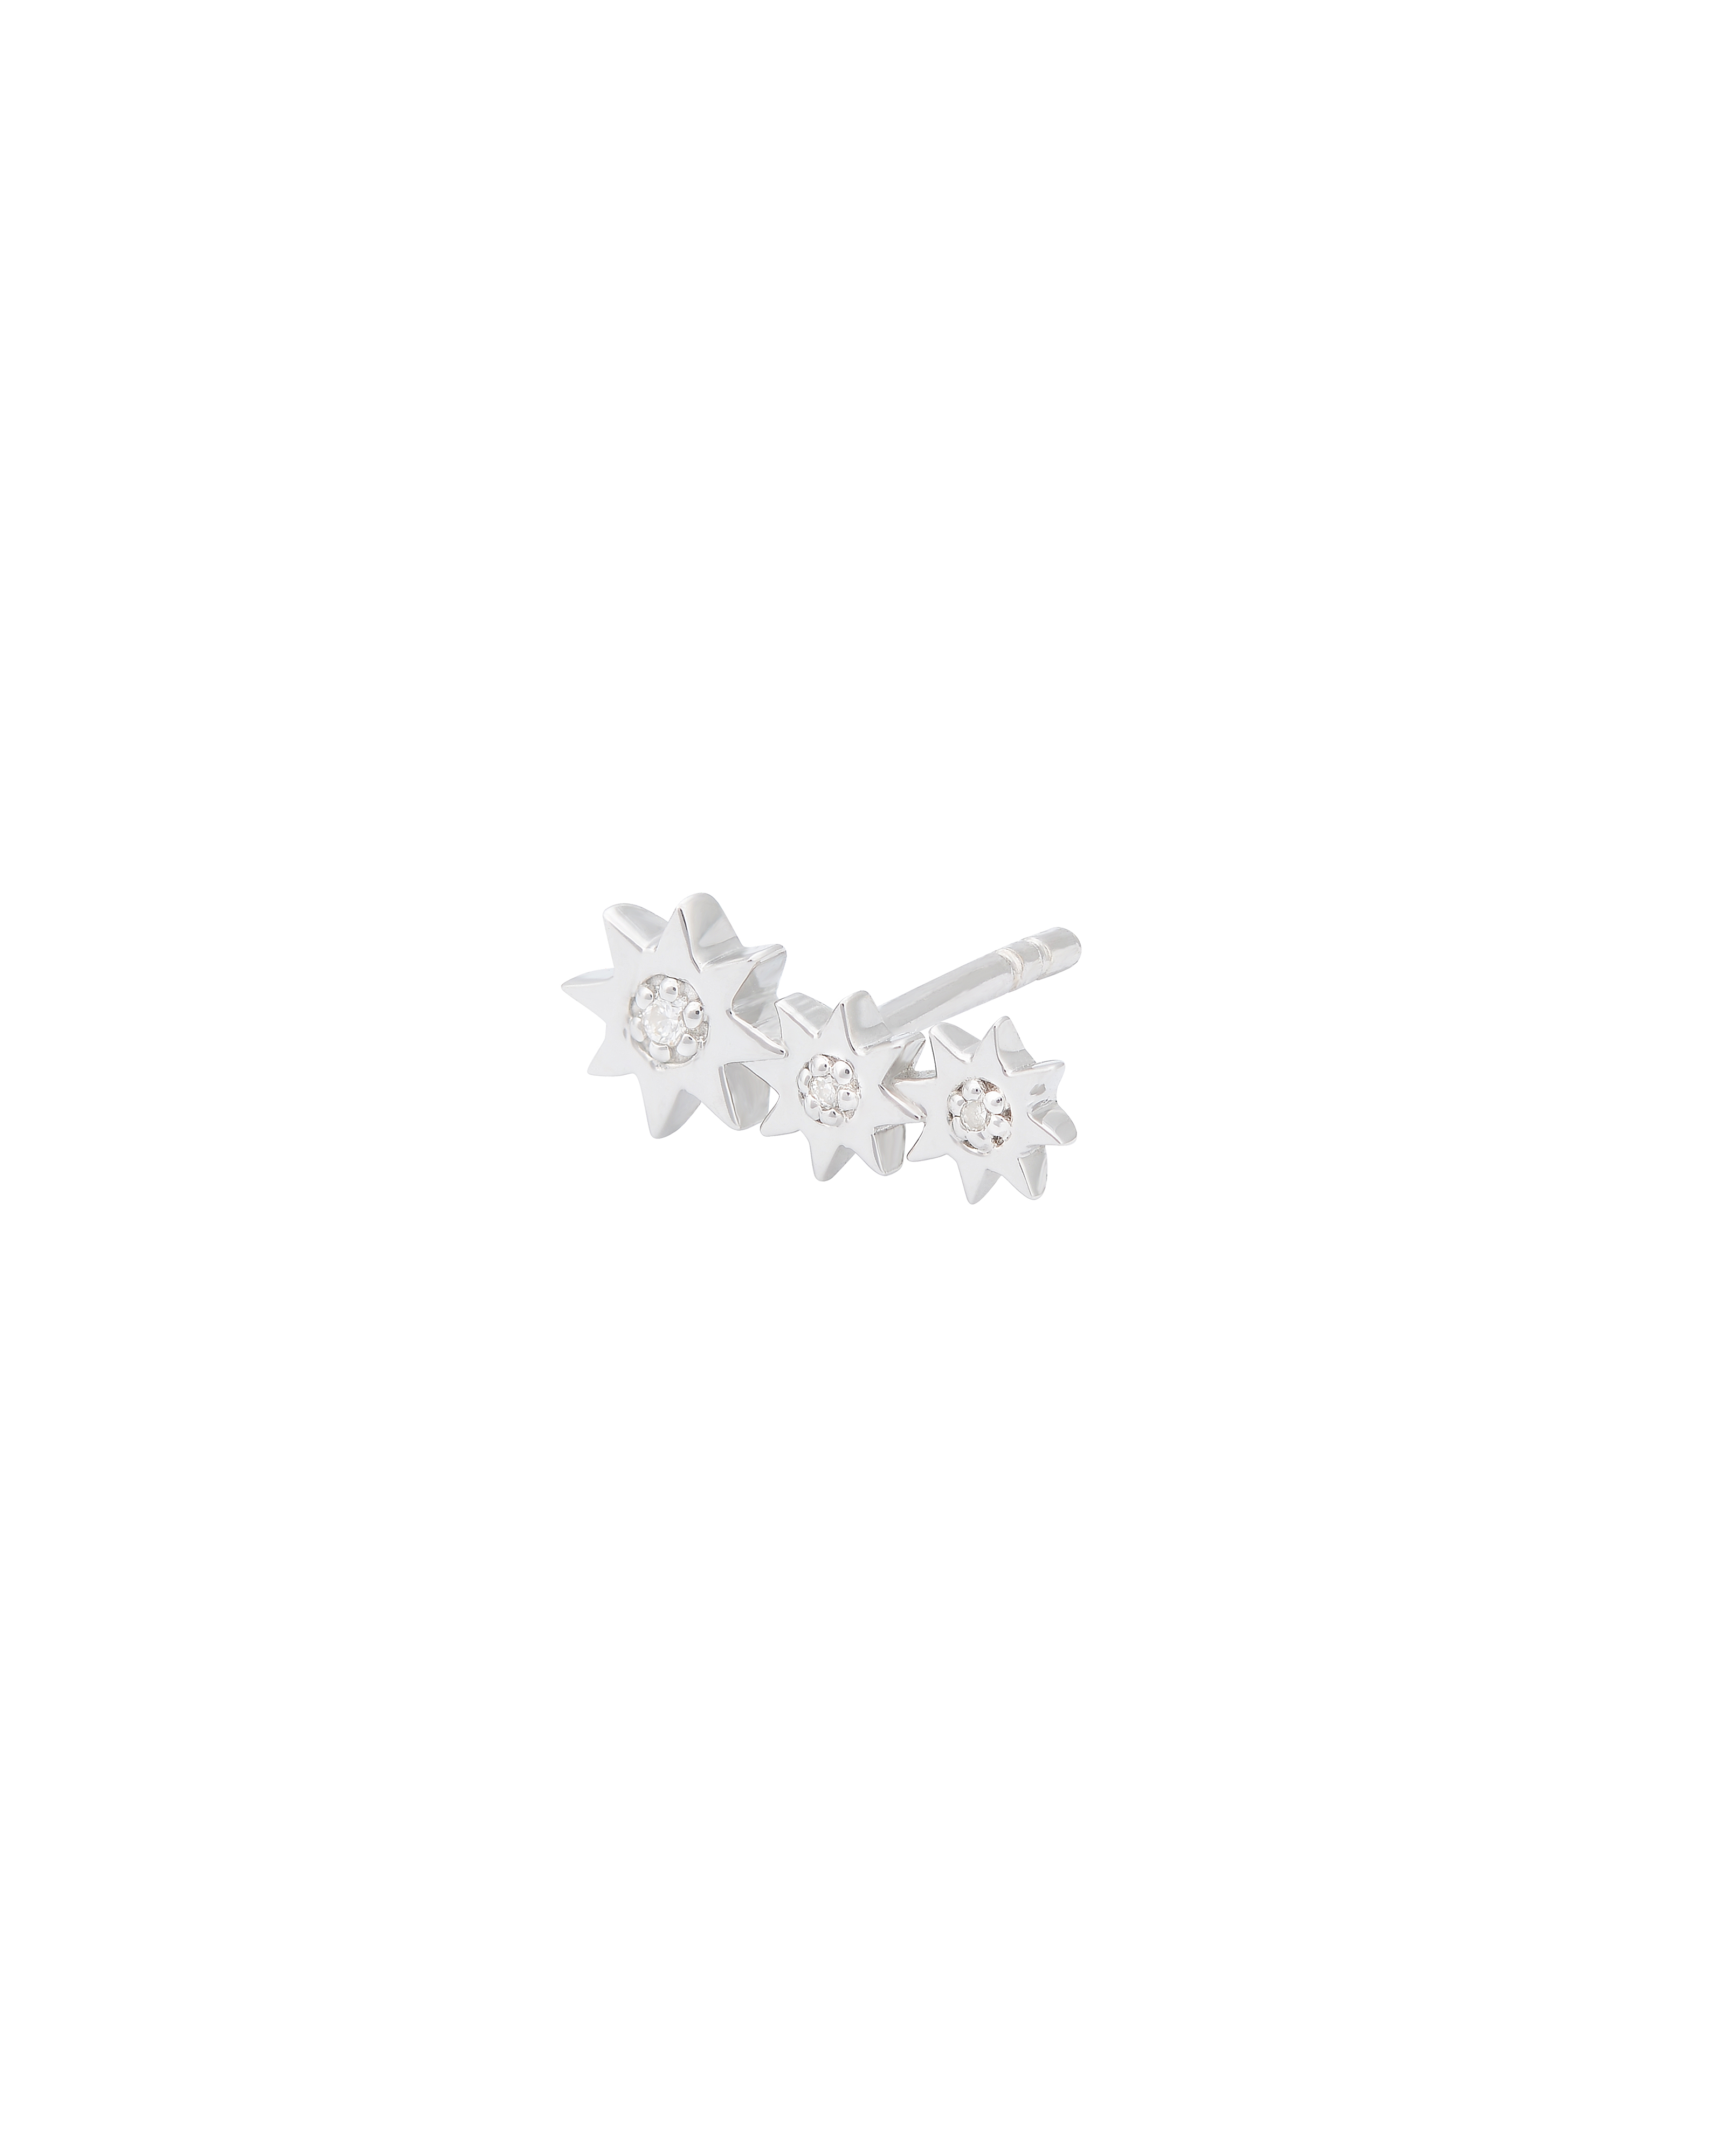       sener-besim-constellation-cluster-diamond-stud-silver-earrings